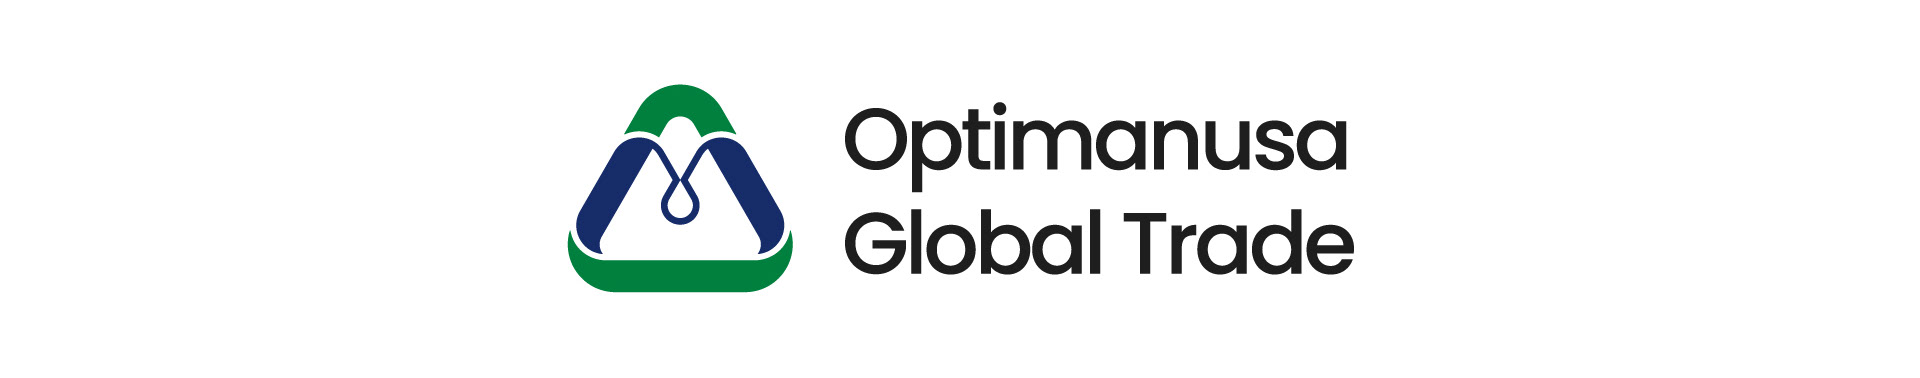 Optimanusa global trade's profile banner